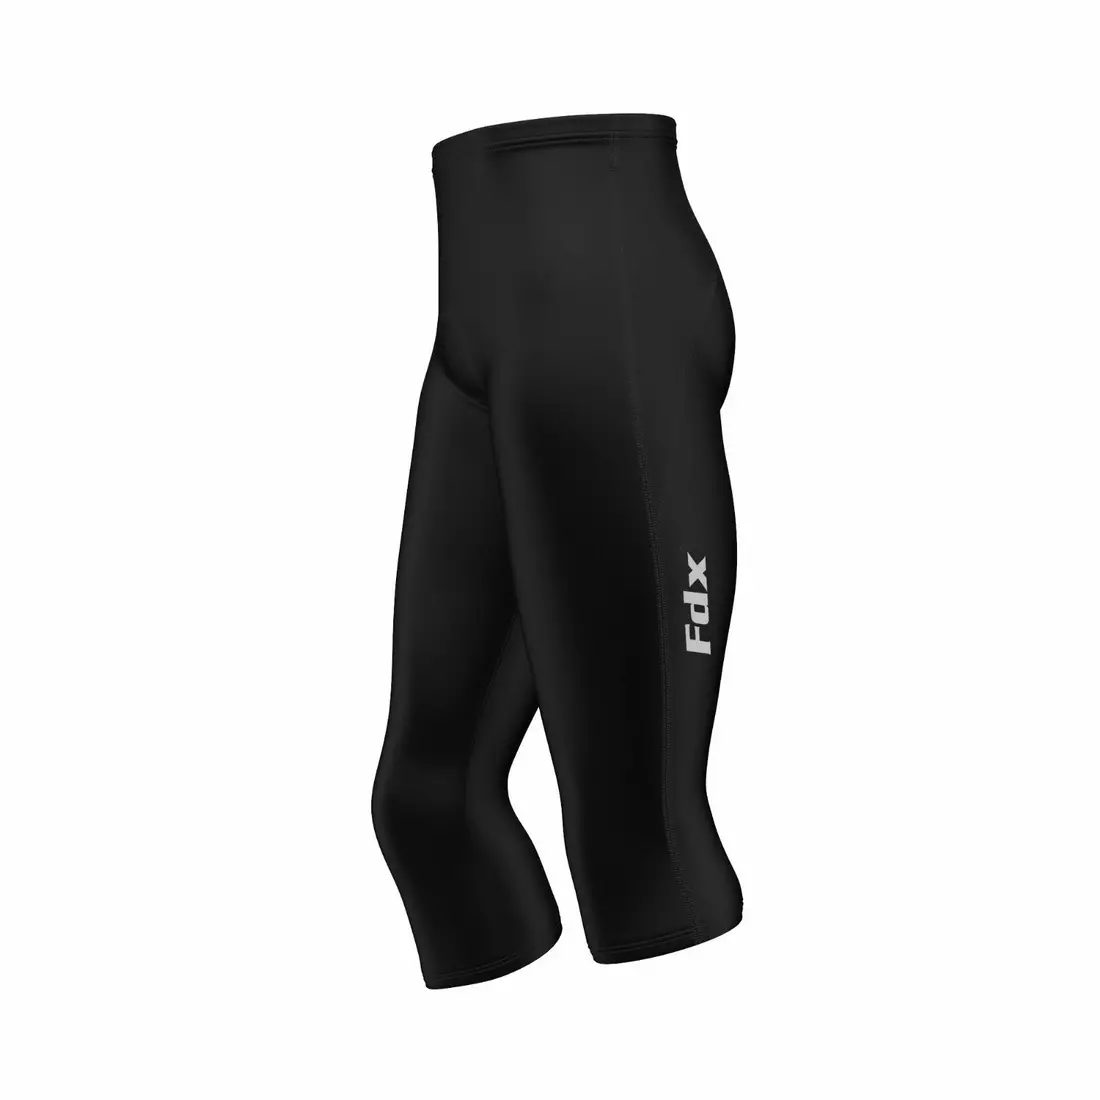 Pantaloni scurți de ciclism pentru bărbați FDX 1600, cusături 3/4 negru/negru